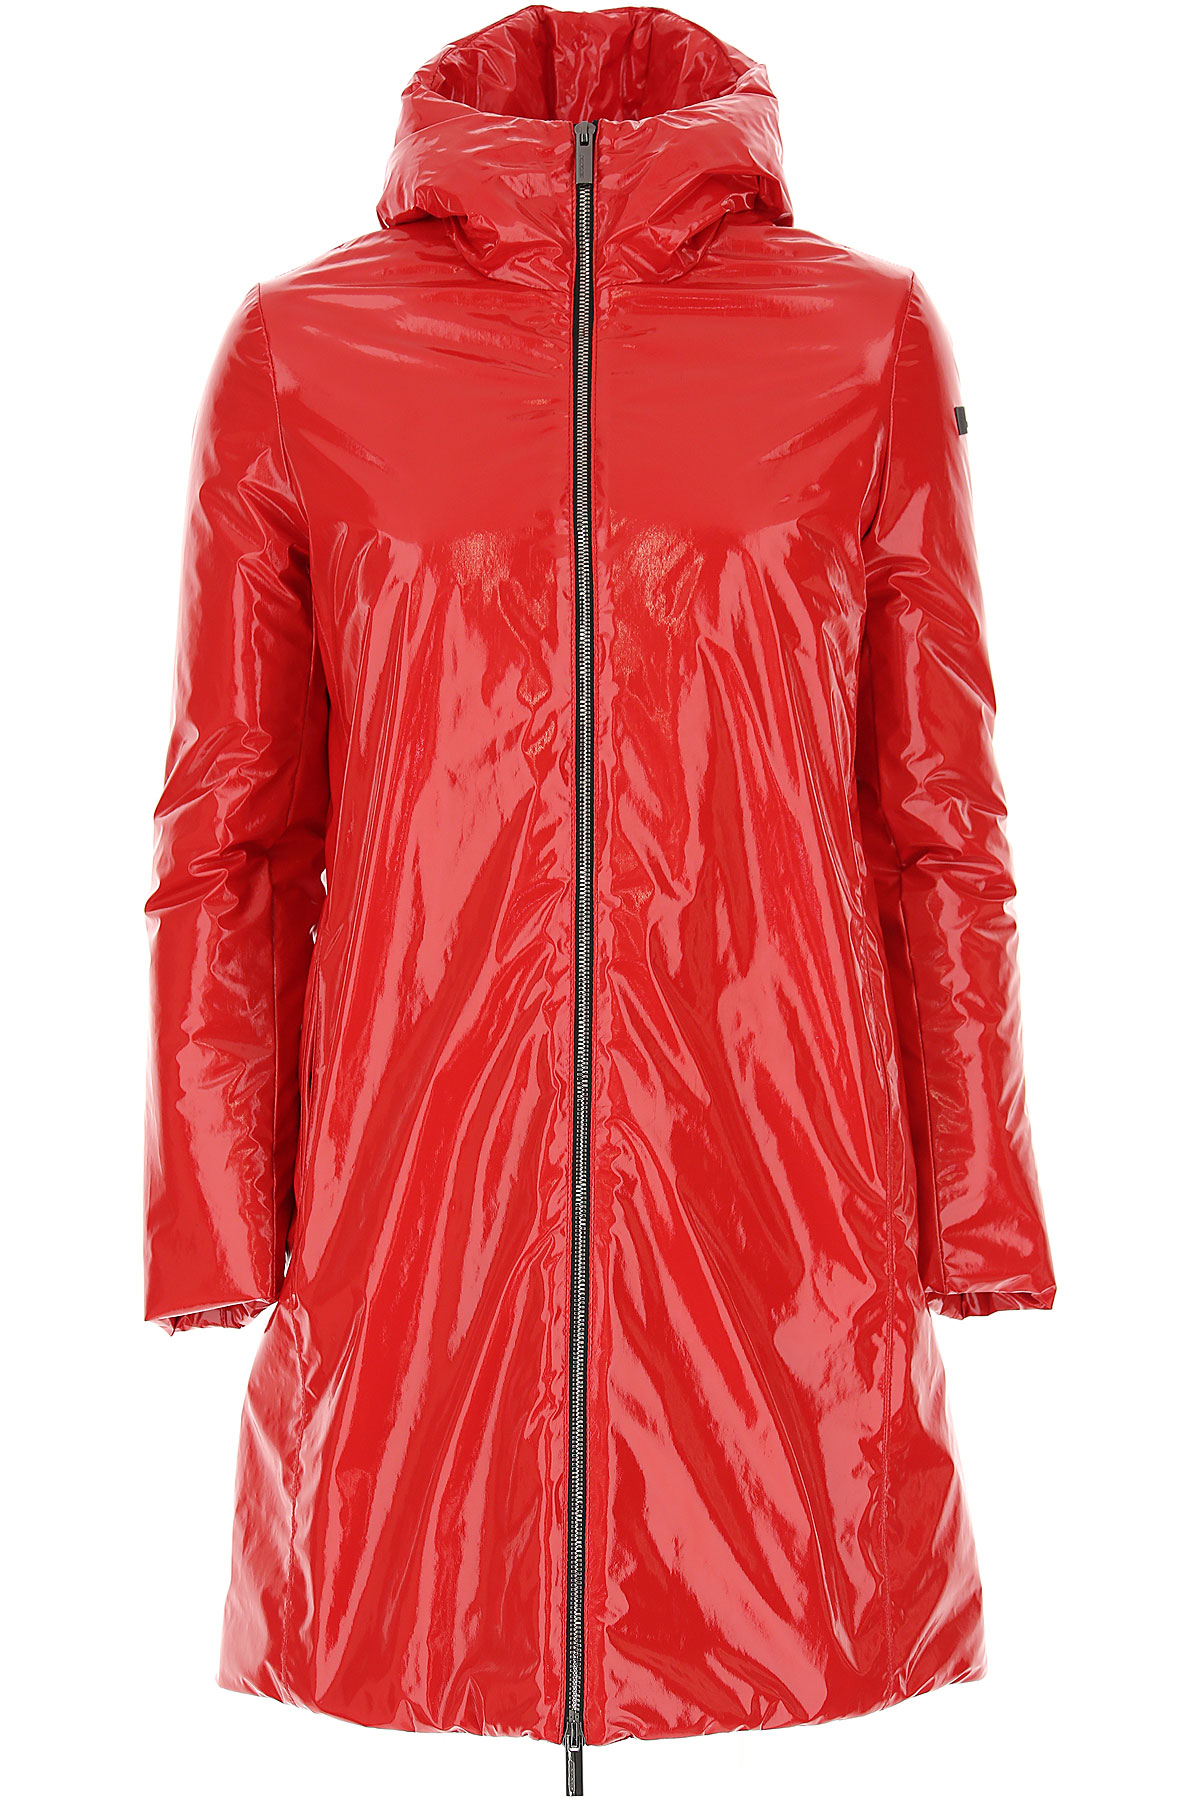 RRD Jacke für Damen Günstig im Sale, Rot, Polyester, 2017, 40 44